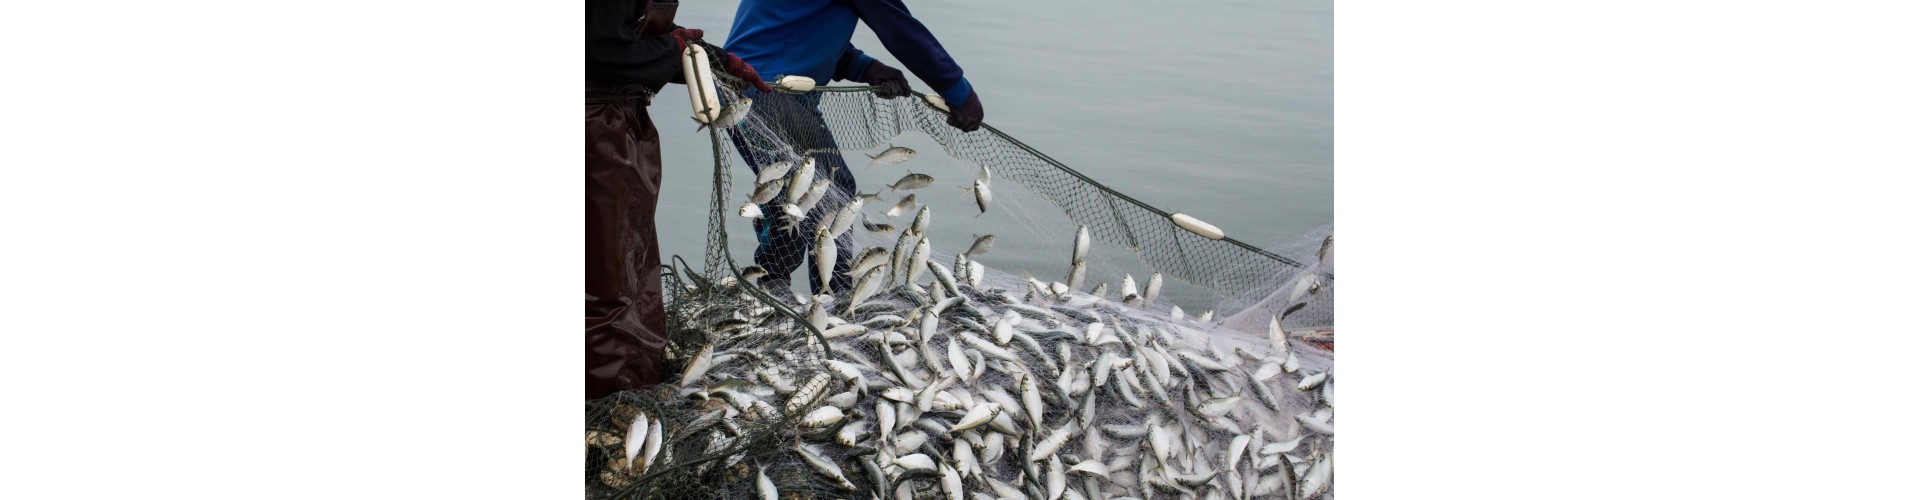 Из Китая с любовью: обычные рыболовные сети высокого качества